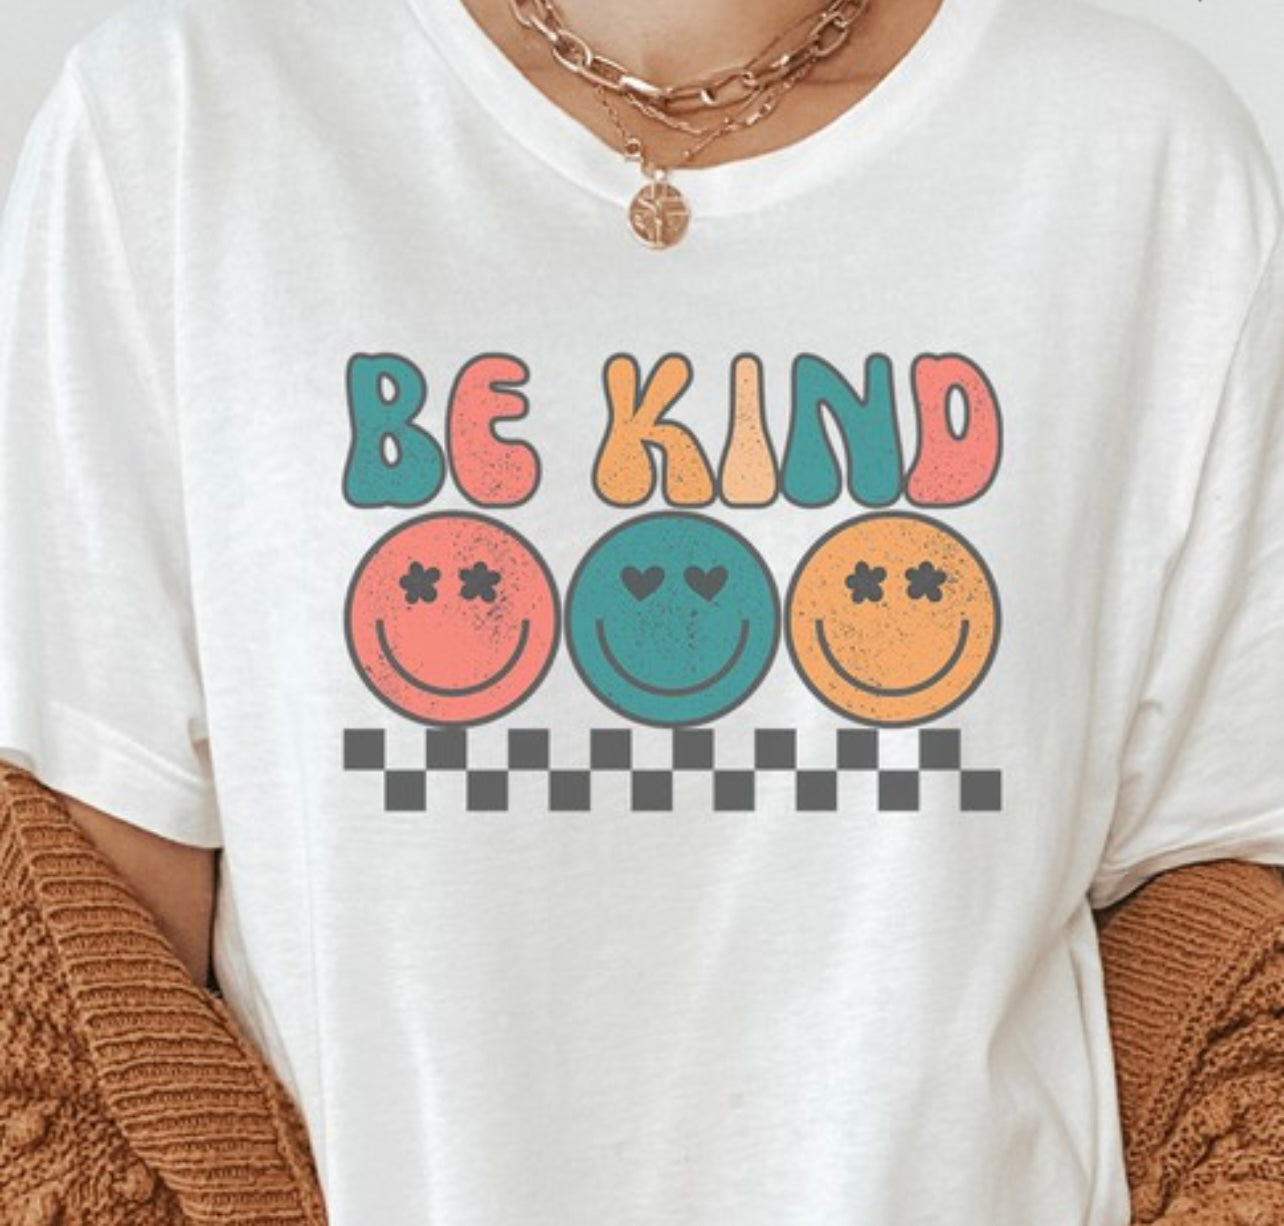 “Be Kind” Ladies Tee in White